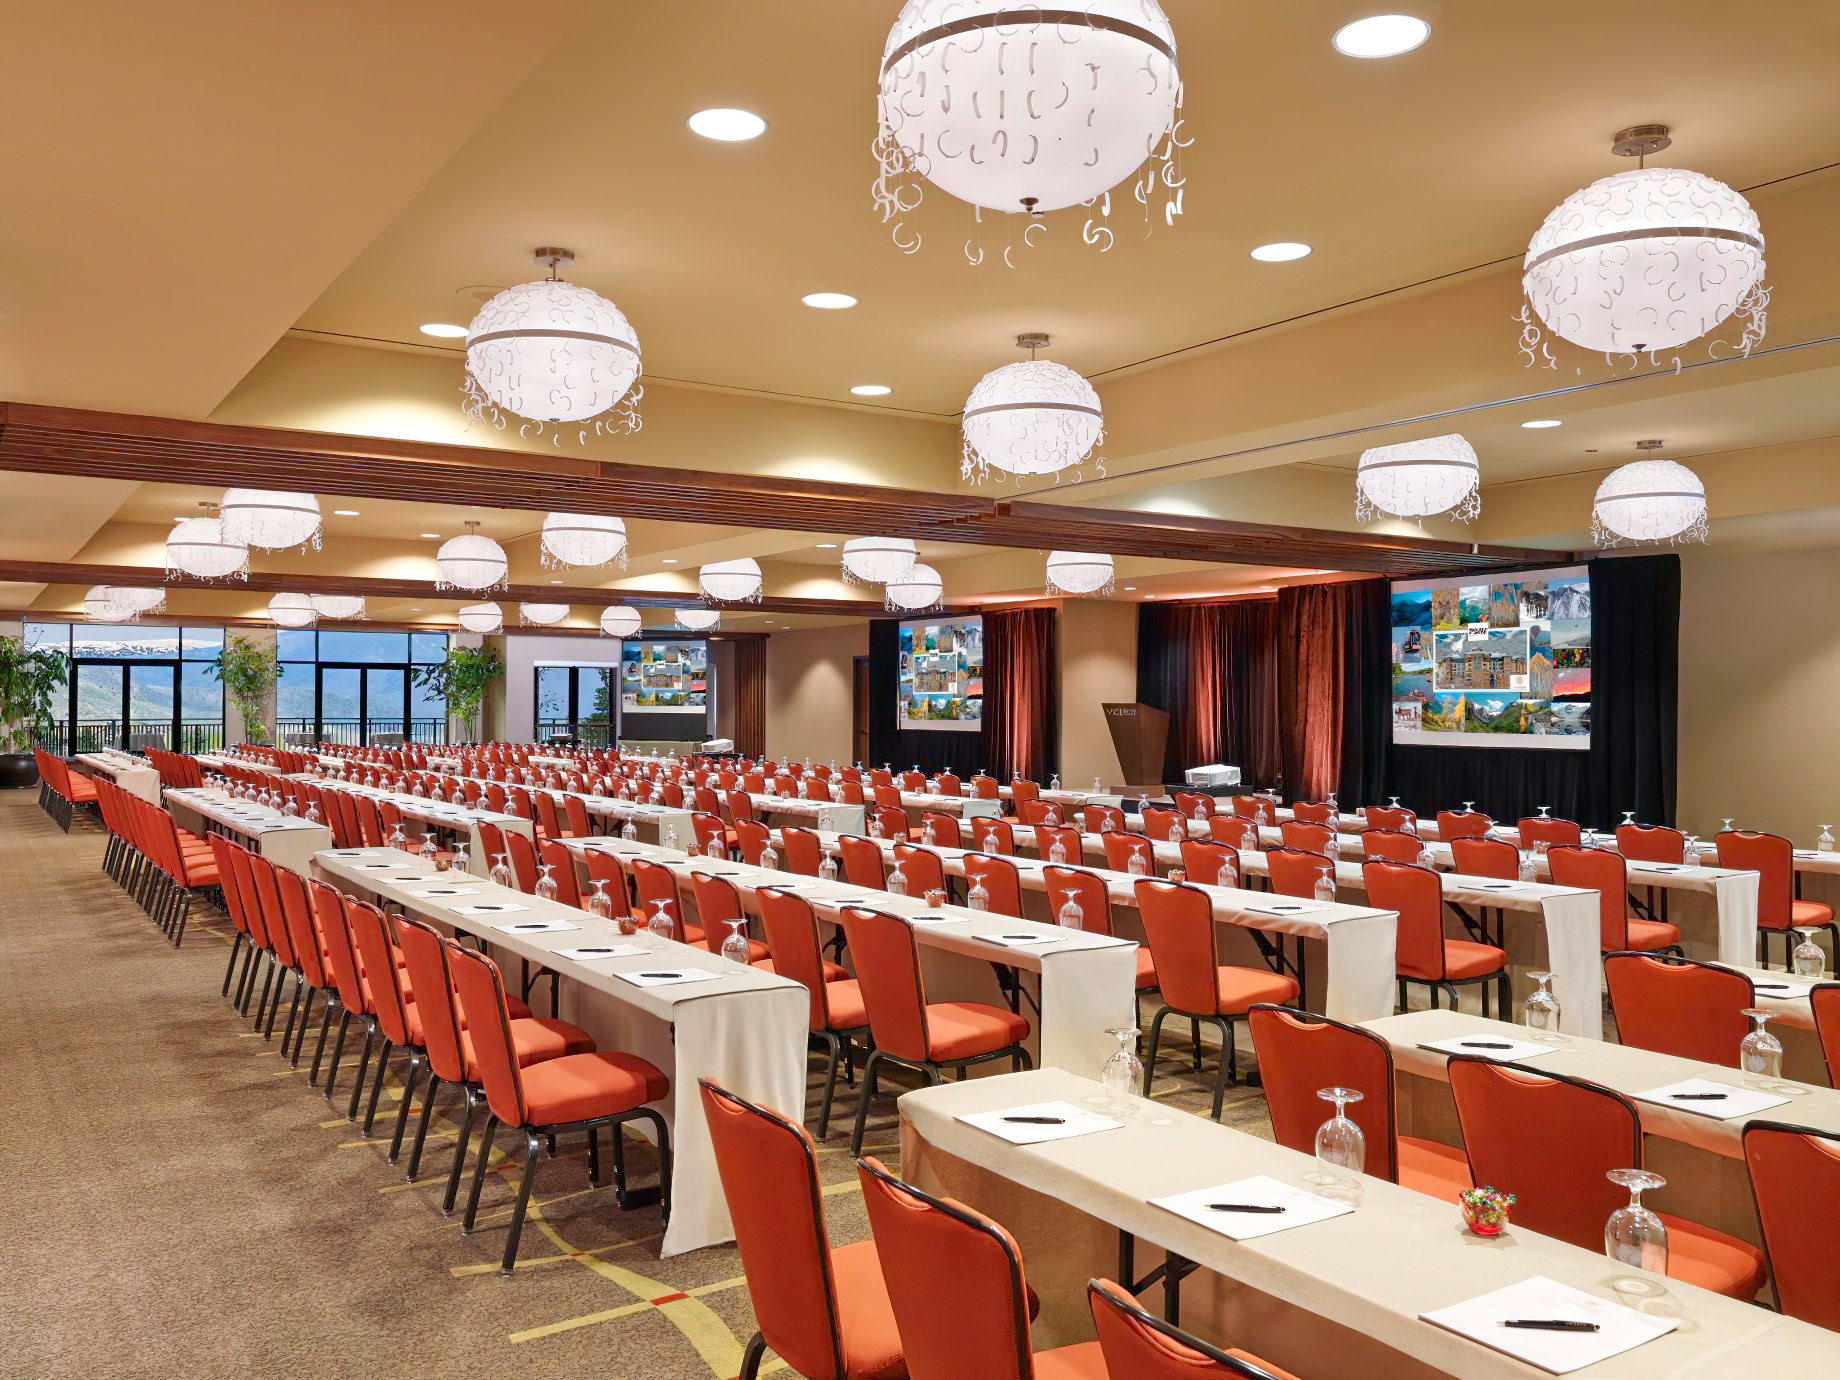 Viceroy Snowmass Luxury Resort – Aspen Snowmass Village, CO, USA – Ballroom Meeting Setup